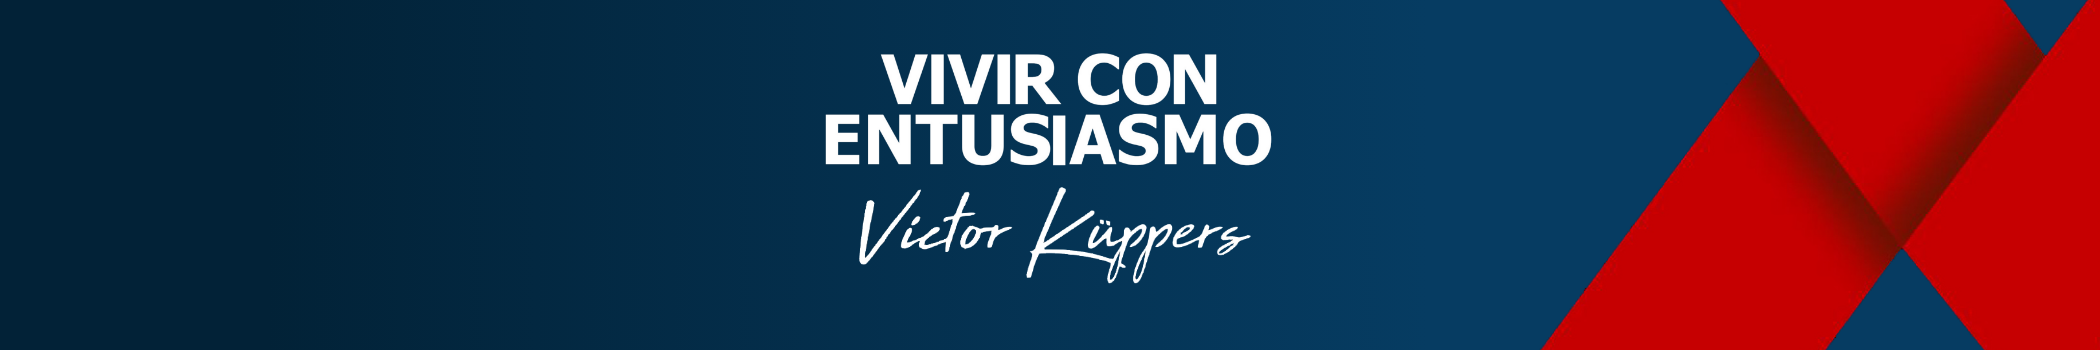 Vivir con entusiasmo Victor Küppers